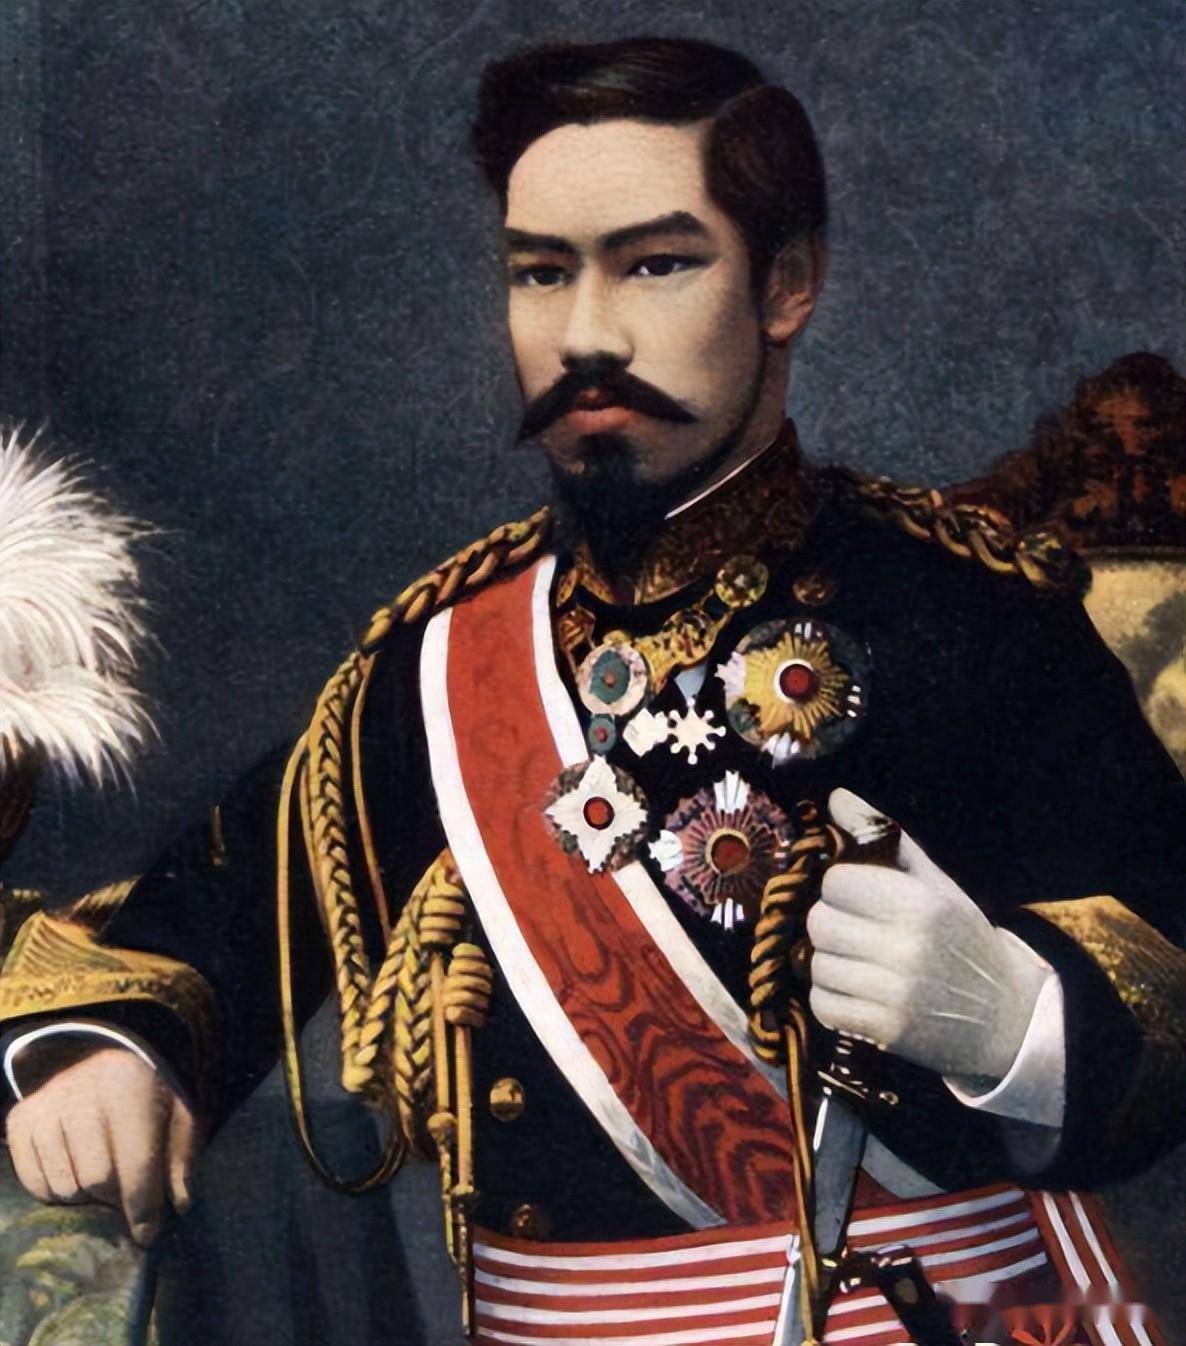 日本明治天皇的儿子图片